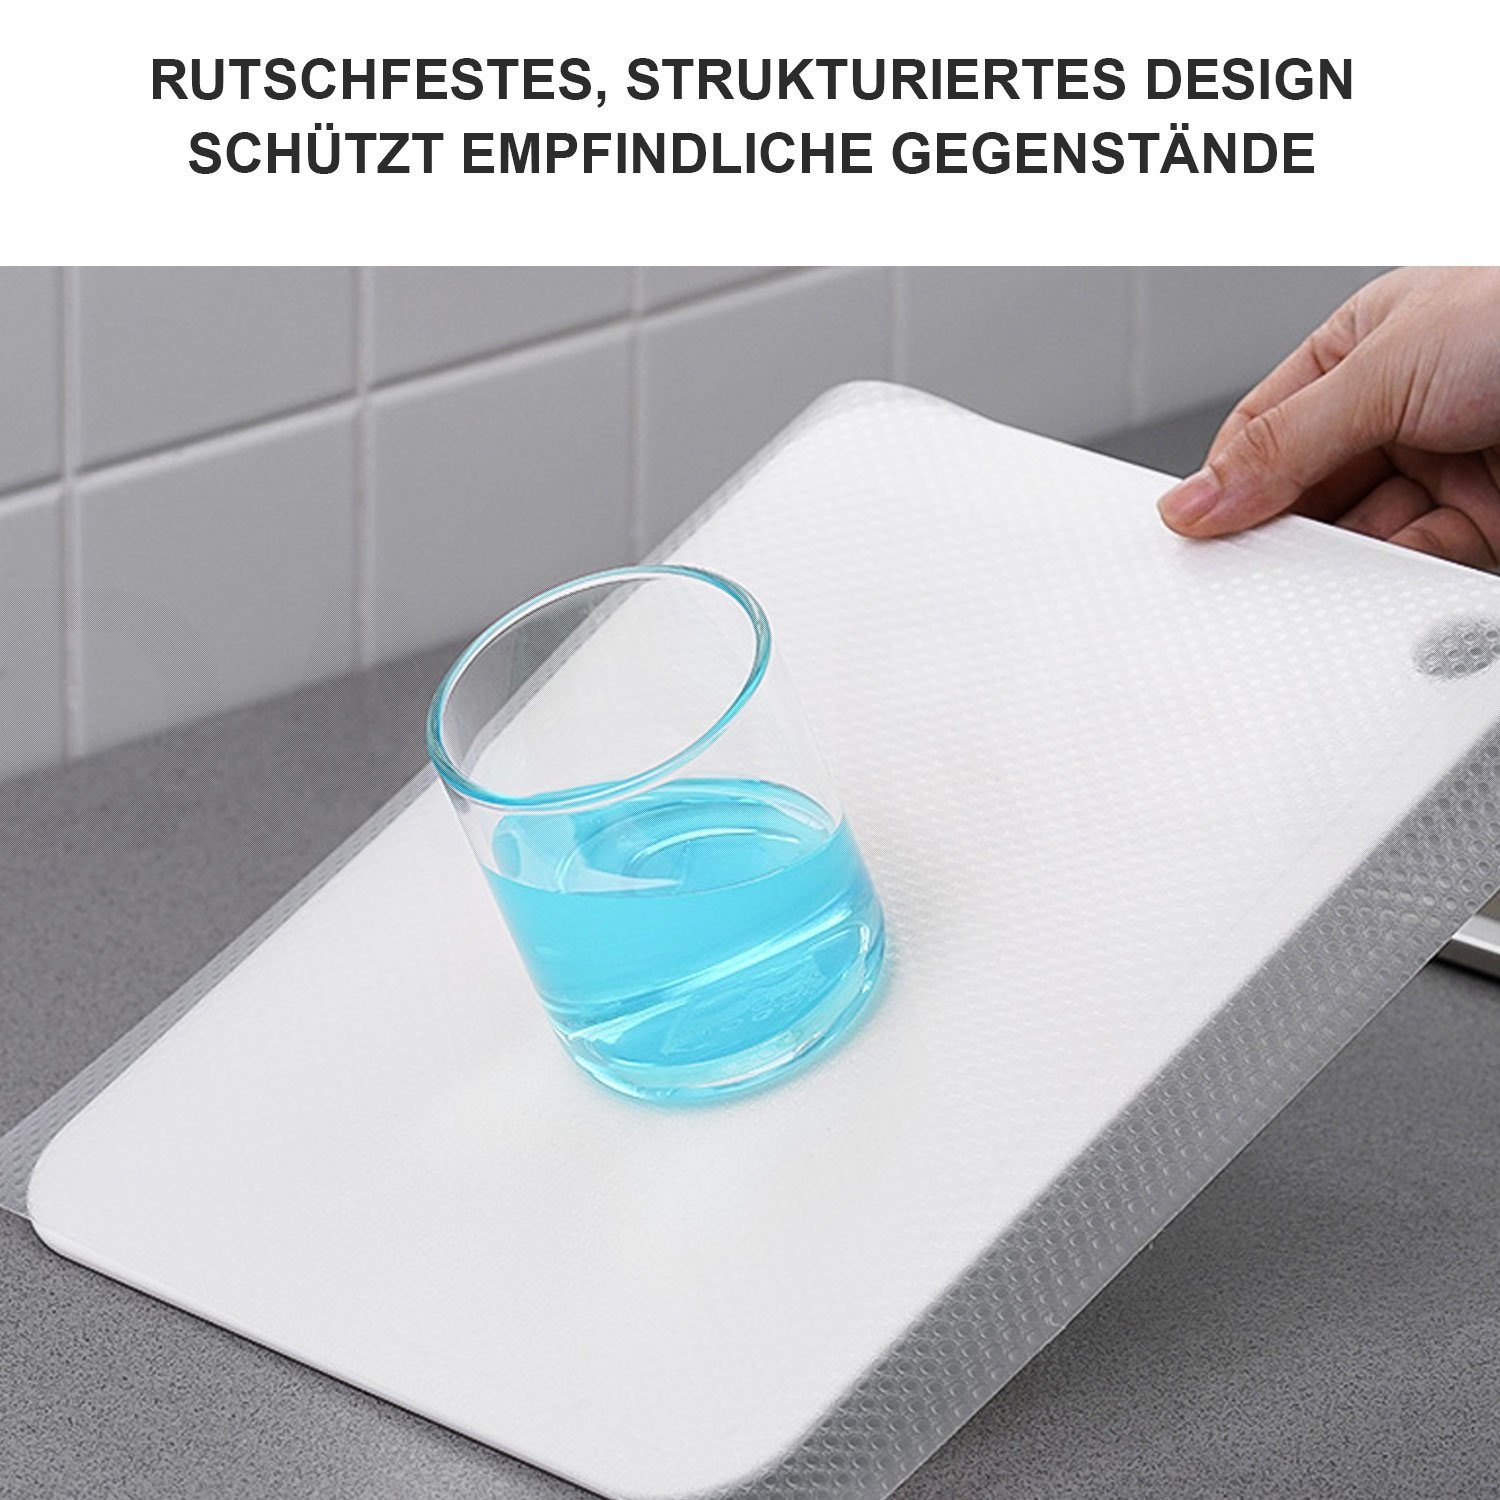 Daisred Schubladenmatte Transparent Schubladenmatte für im Schränke Schrank Regal